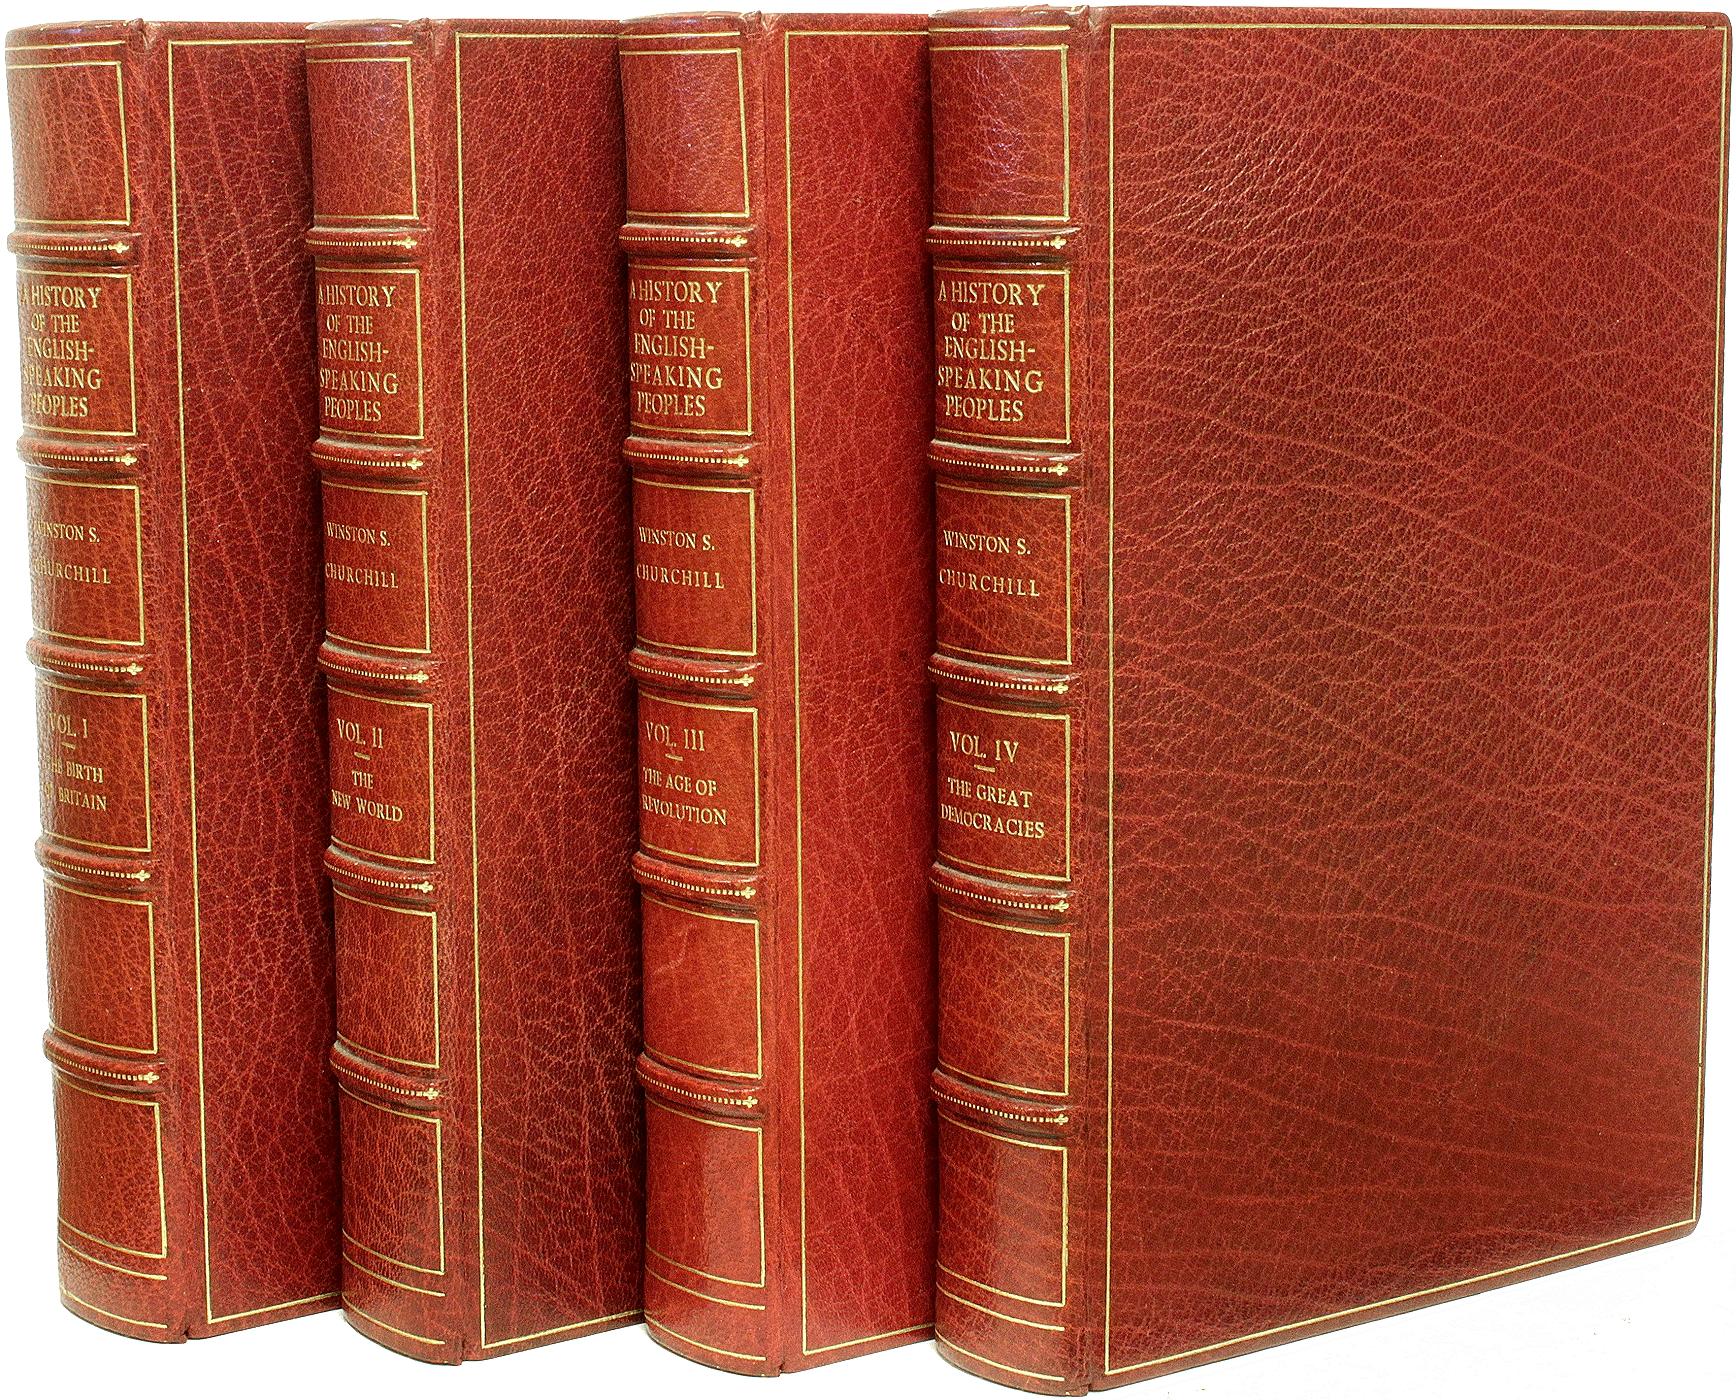 AUTEUR : CHURCHILL, Winston. 

TITRE : Histoire des peuples de langue anglaise.

ÉDITEUR : NY : Dodd, Mead & Company, 1956-56-57-58.

DESCRIPTION : 4 volumes, 8-1/4